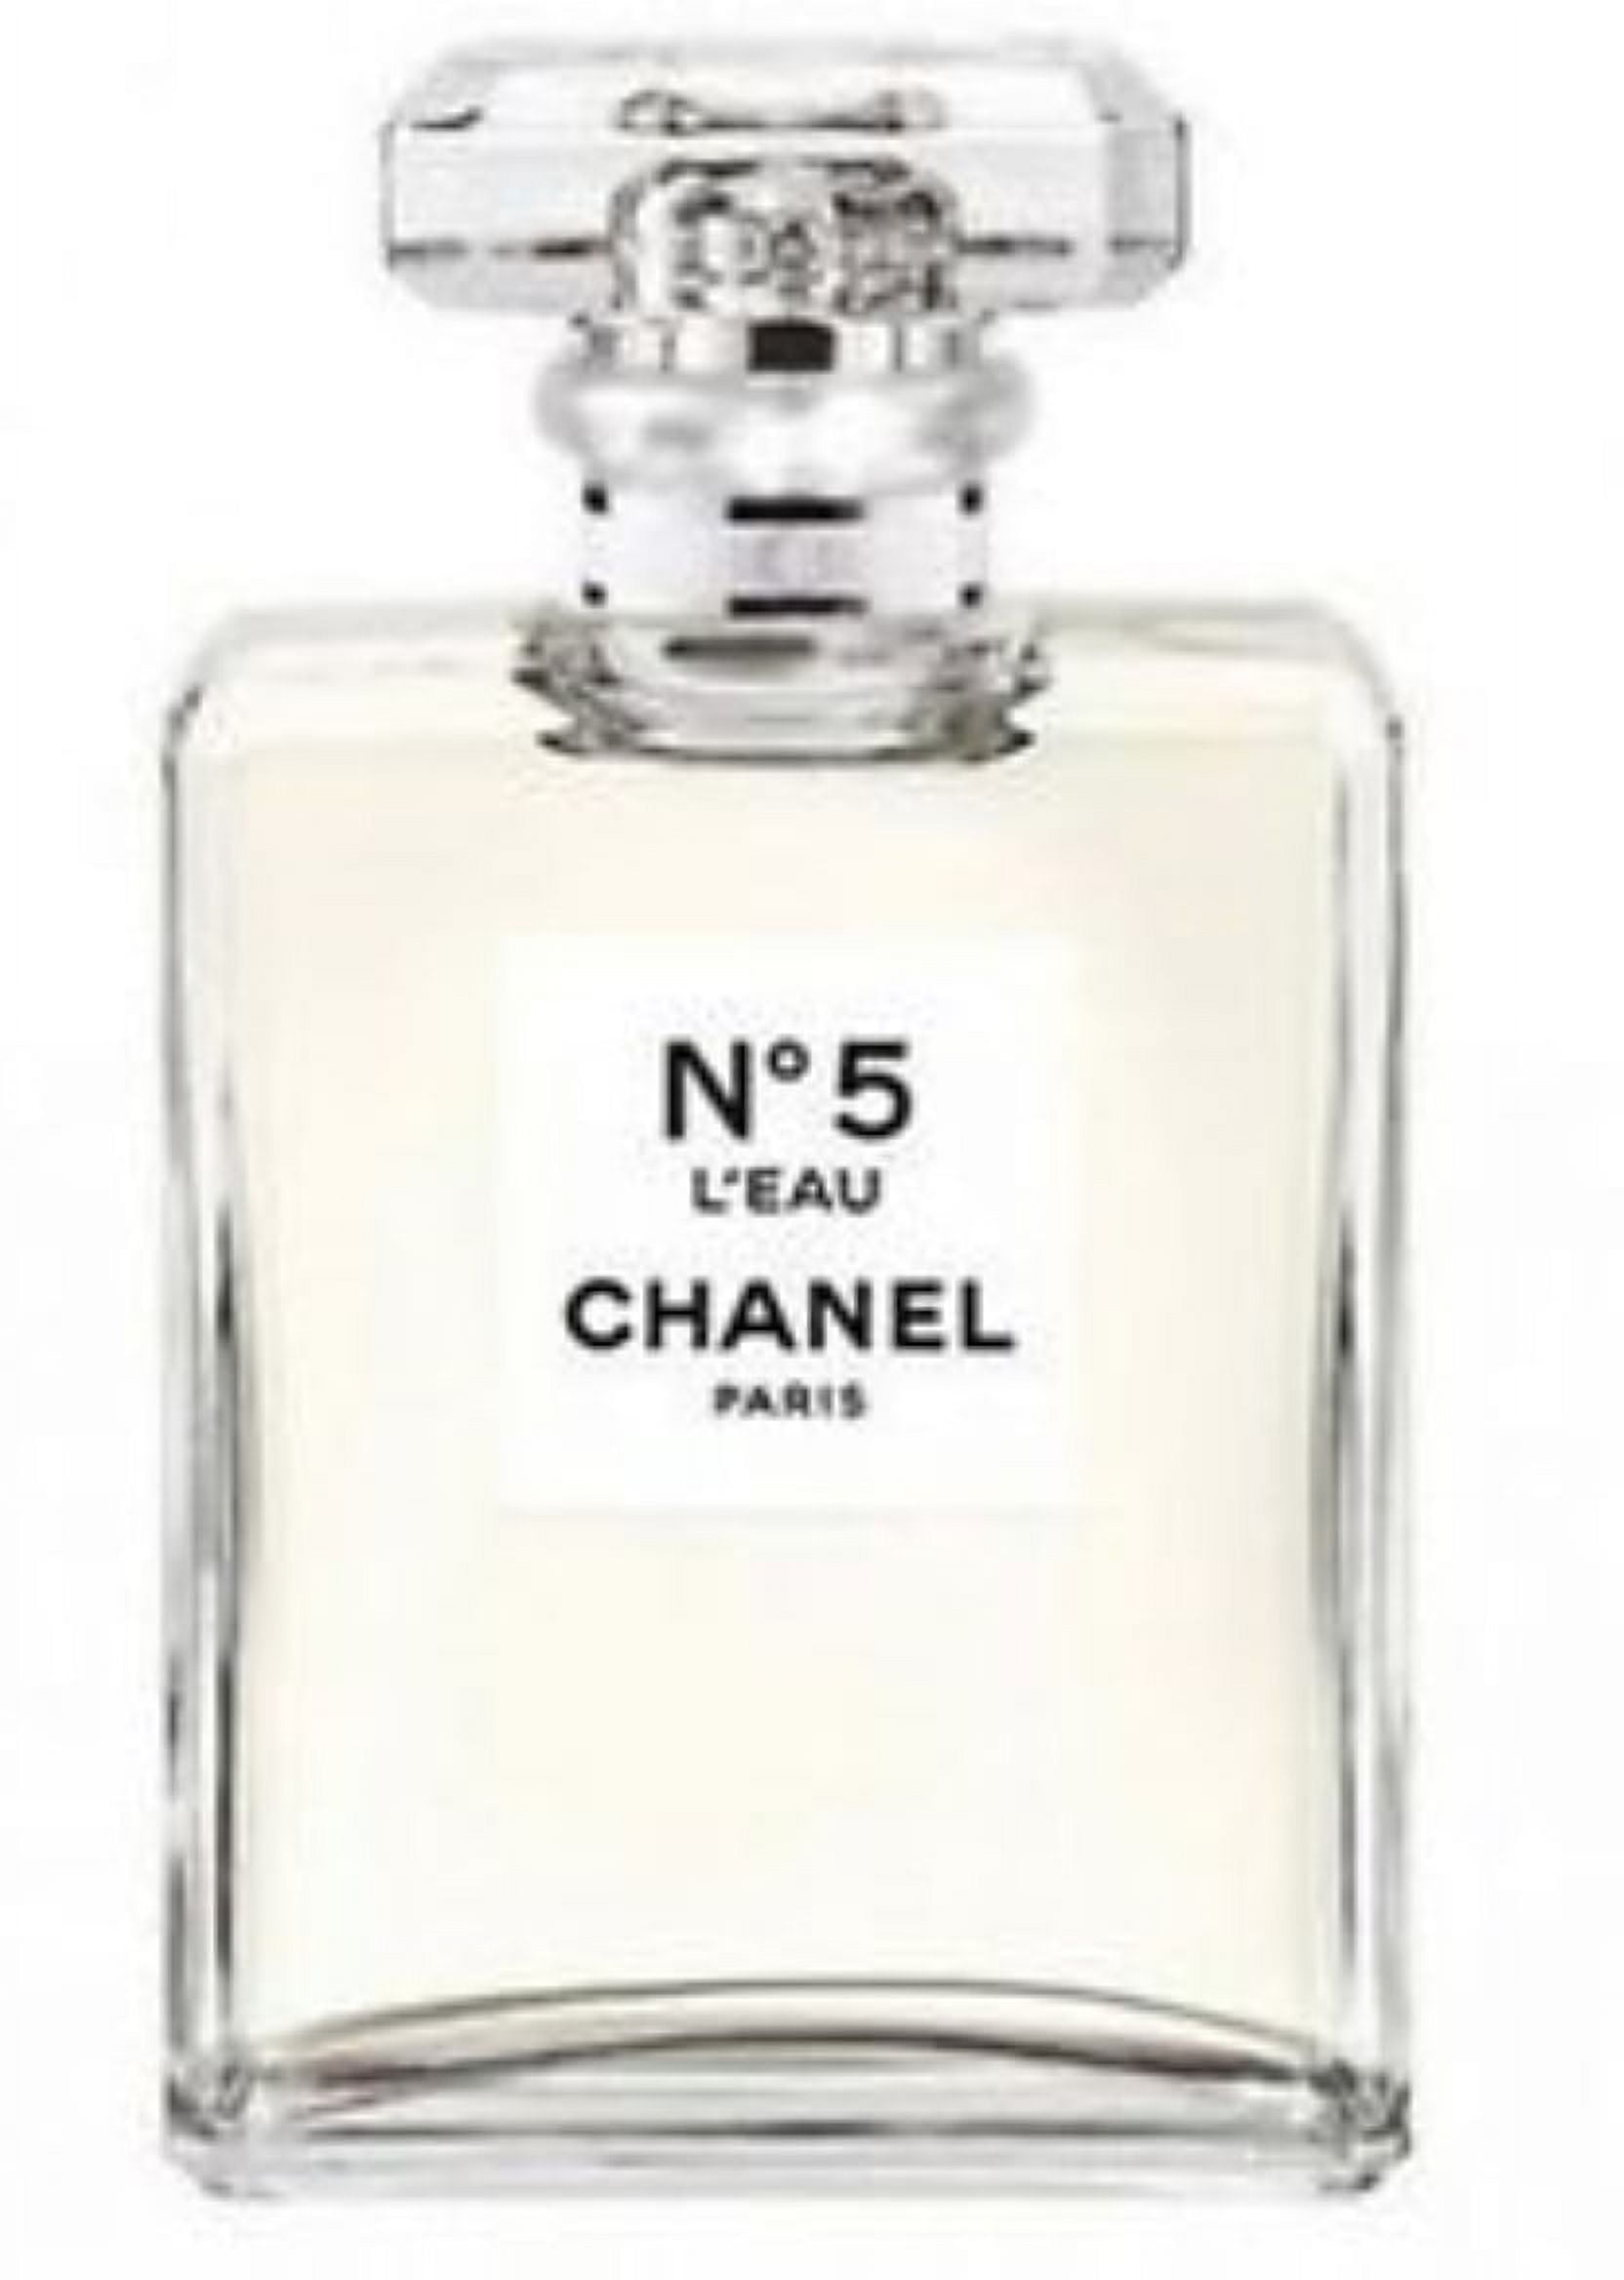 Chanel No.5 L'Eau Eau De Toilette Spray 3.4 oz